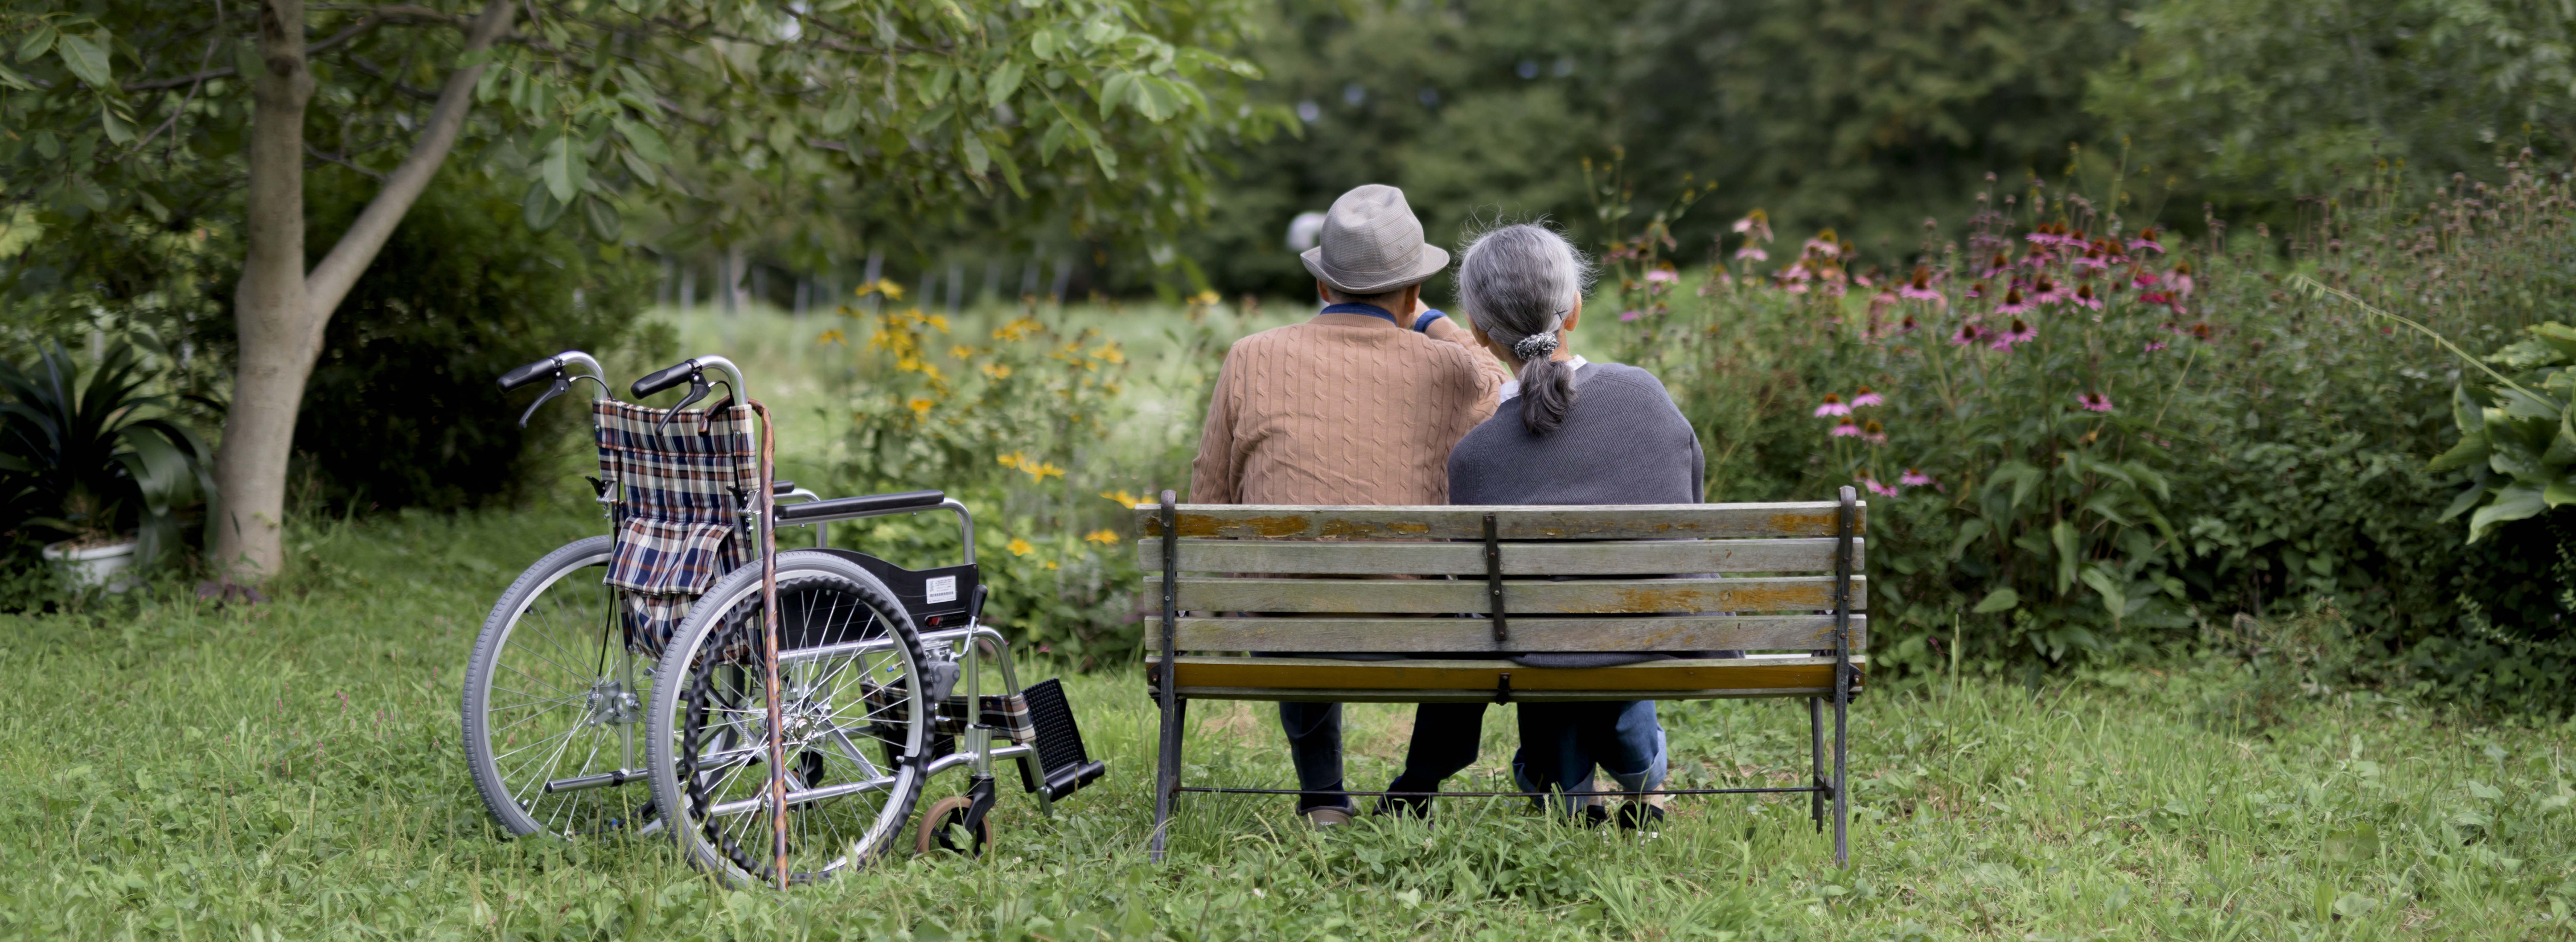 Älteres Paar auf einer Parkbank neben Rollstuhl